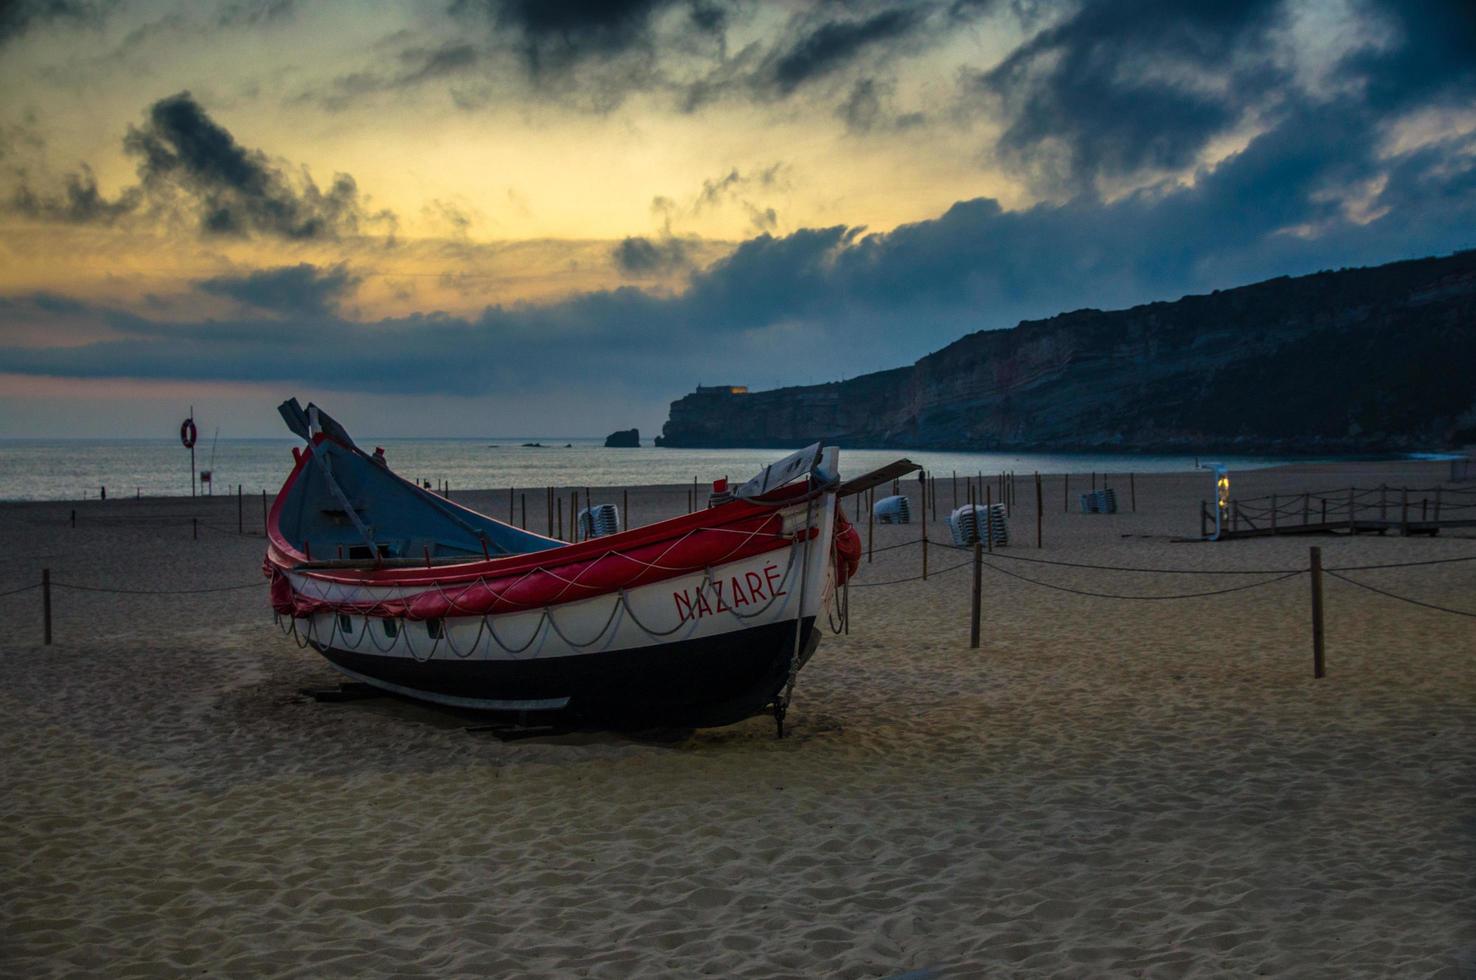 nazare, portugal - 21 juni 2017 traditionella fiskebåtar på sandstranden i nazare vid solnedgången skymning skymning, portugal, Atlanten foto